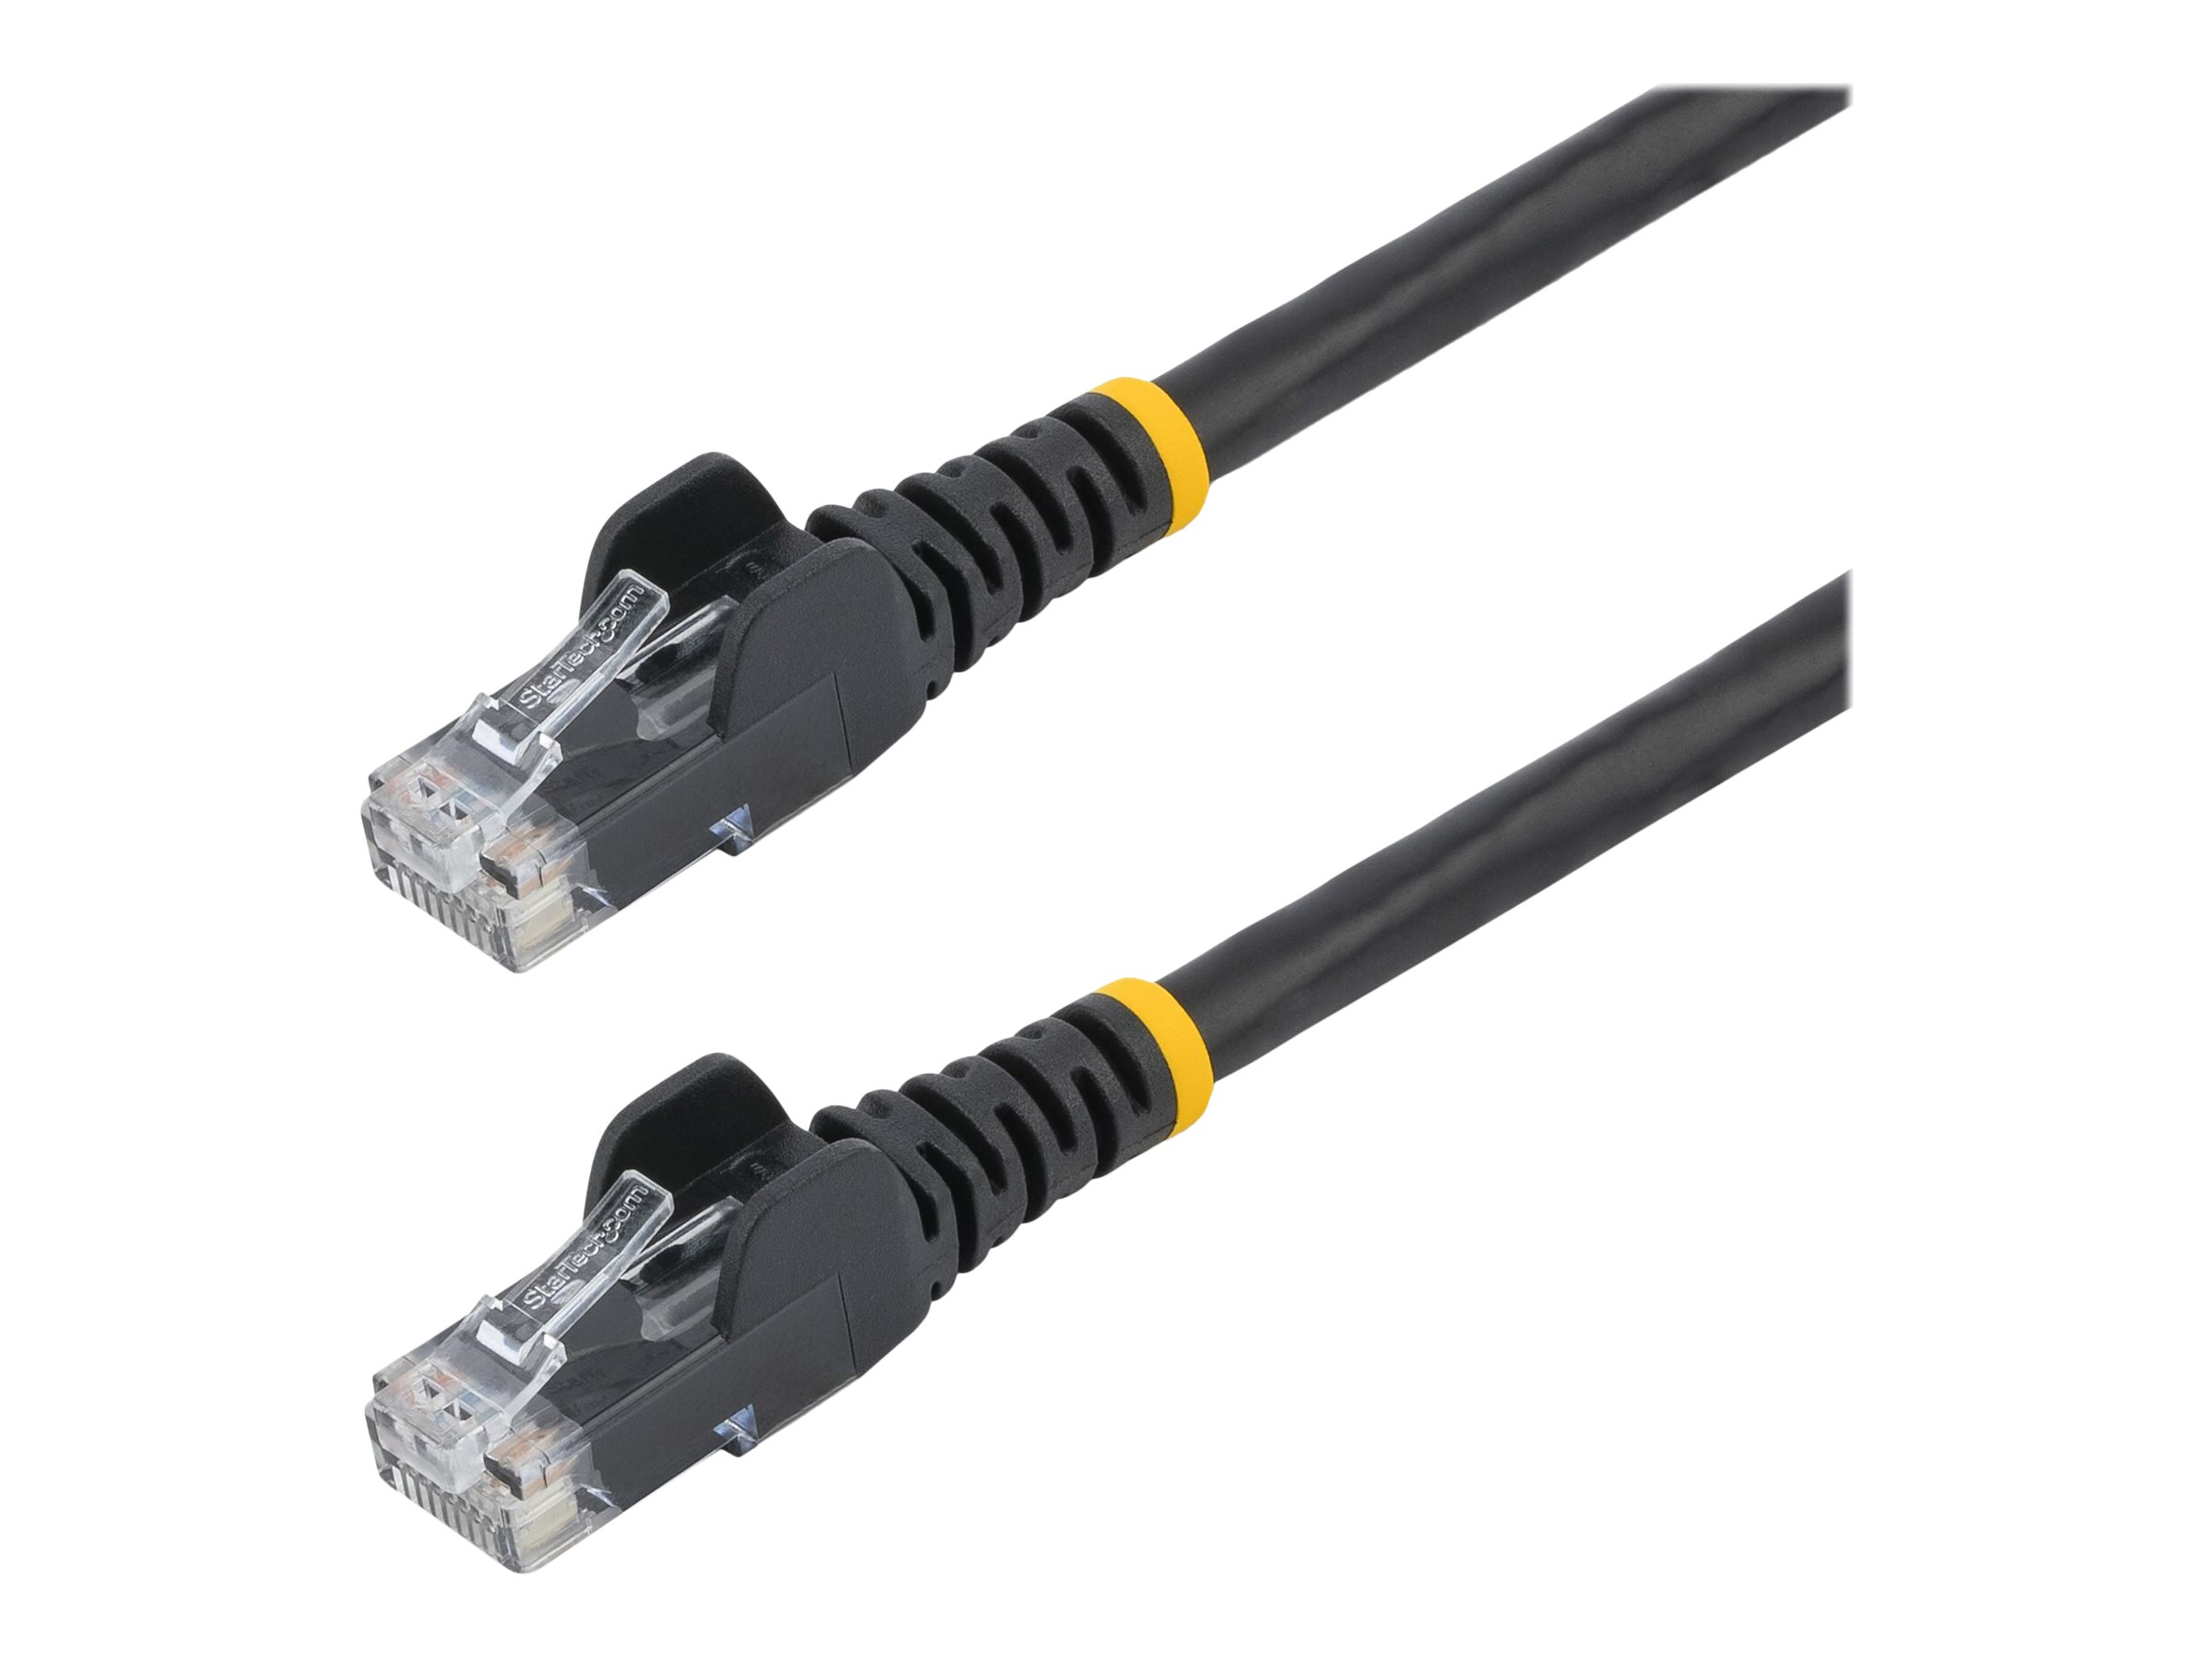 StarTech.com Câble Ethernet CAT6 2m - LSZH (Low Smoke Zero Halogen) - Cordon RJ45 UTP Anti-accrochage 10 GbE LAN - Câble Réseau Internet 650MHz 100W PoE - Noir - Snagless - 24AWG (N6LPATCH2MBK) - Cordon de raccordement - RJ-45 (M) pour RJ-45 (M) - 2 m - 6 mm - UTP - CAT 6 - sans crochet - noir - N6LPATCH2MBK - Câbles à paire torsadée